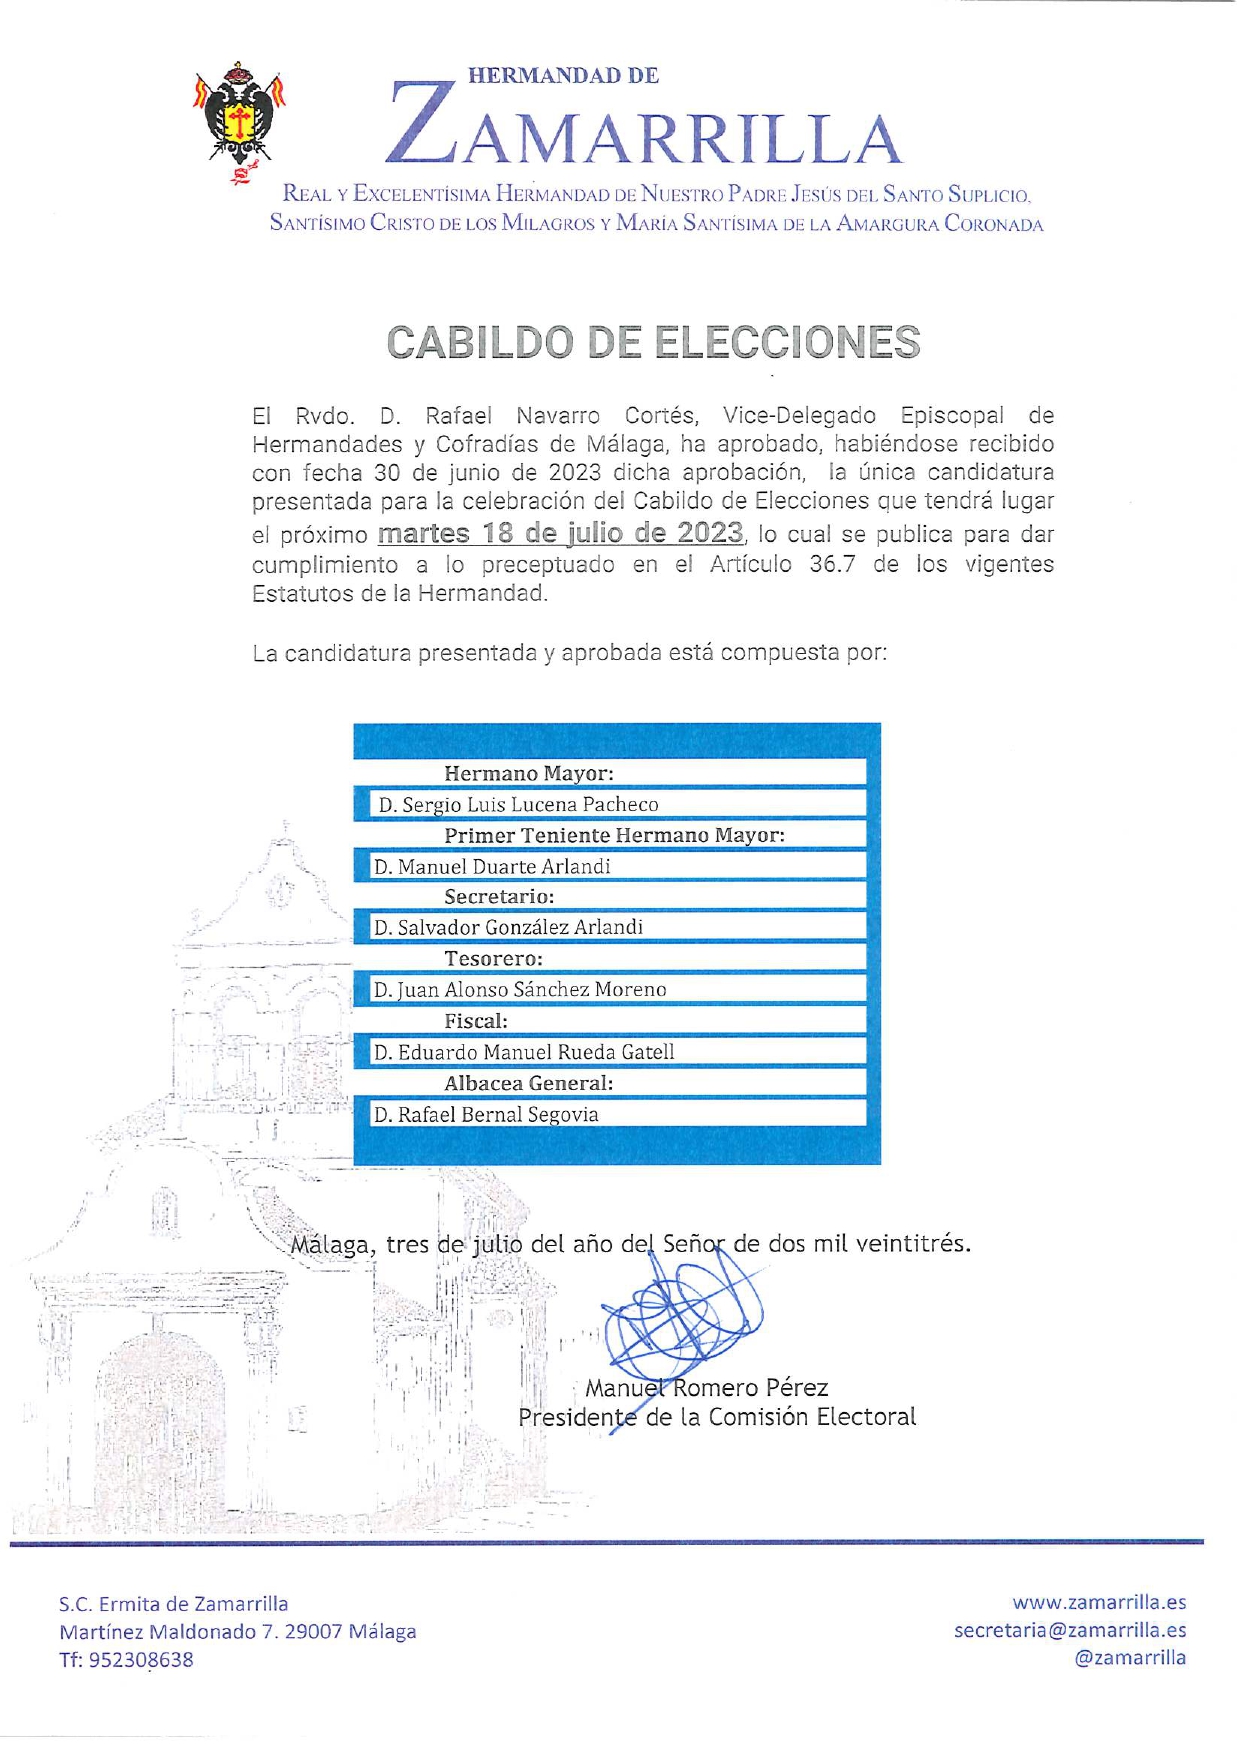 CANDIDATURA PRESENTADA Y APROBADA (ELECCIONES ZAMARRILLA 2023)